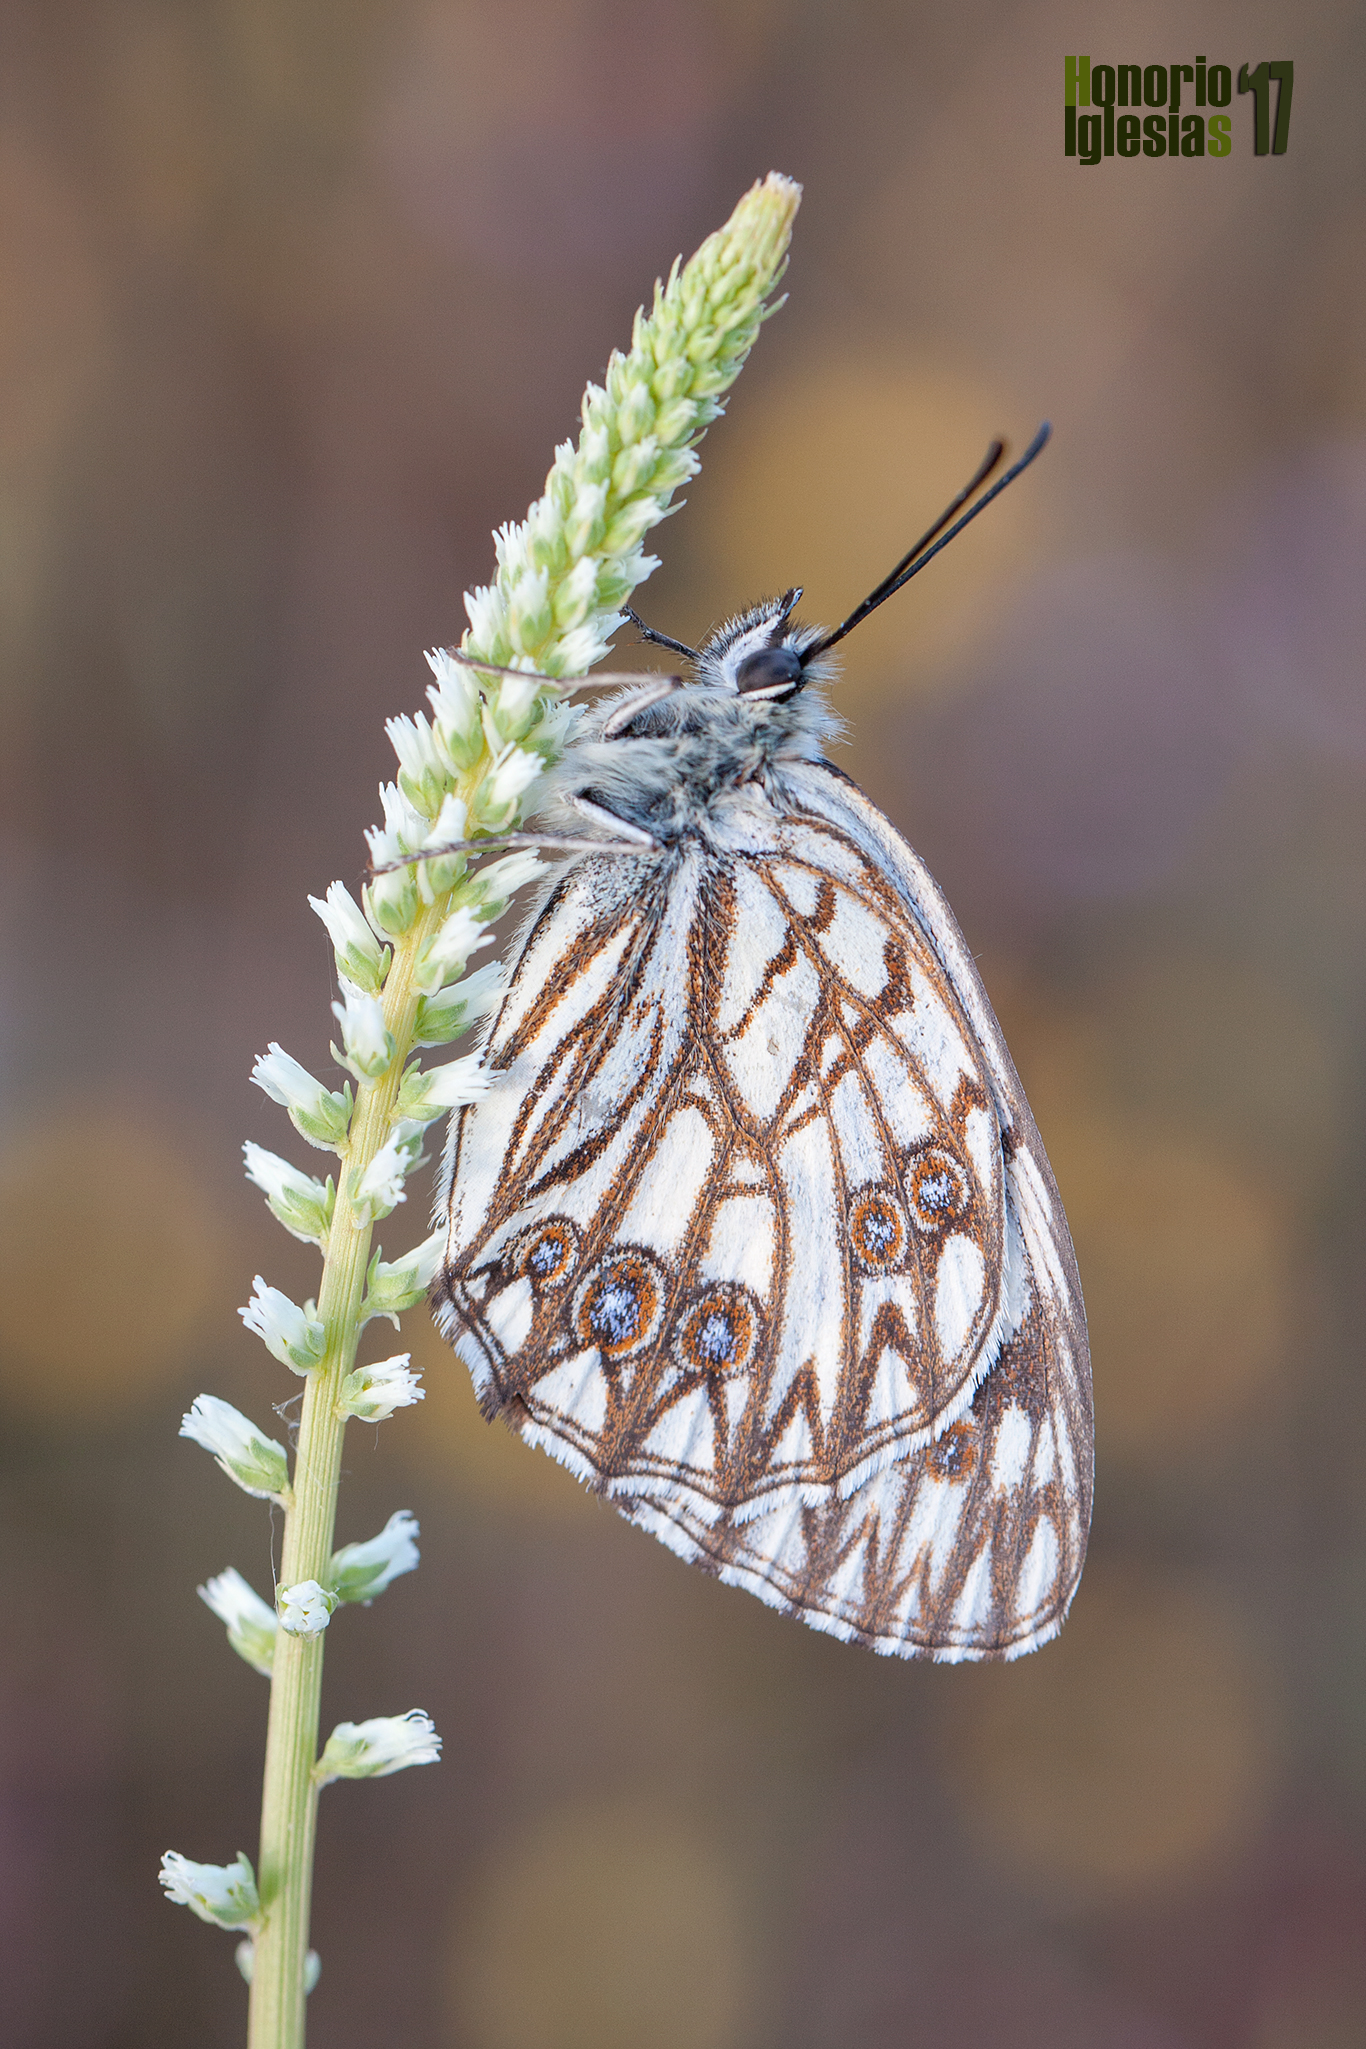 Ejemplar de mariposa medioluto herrumbrosa (Melanargia occitanica) sobre la planta en la que ha pasado la noche, con las primeras luces.